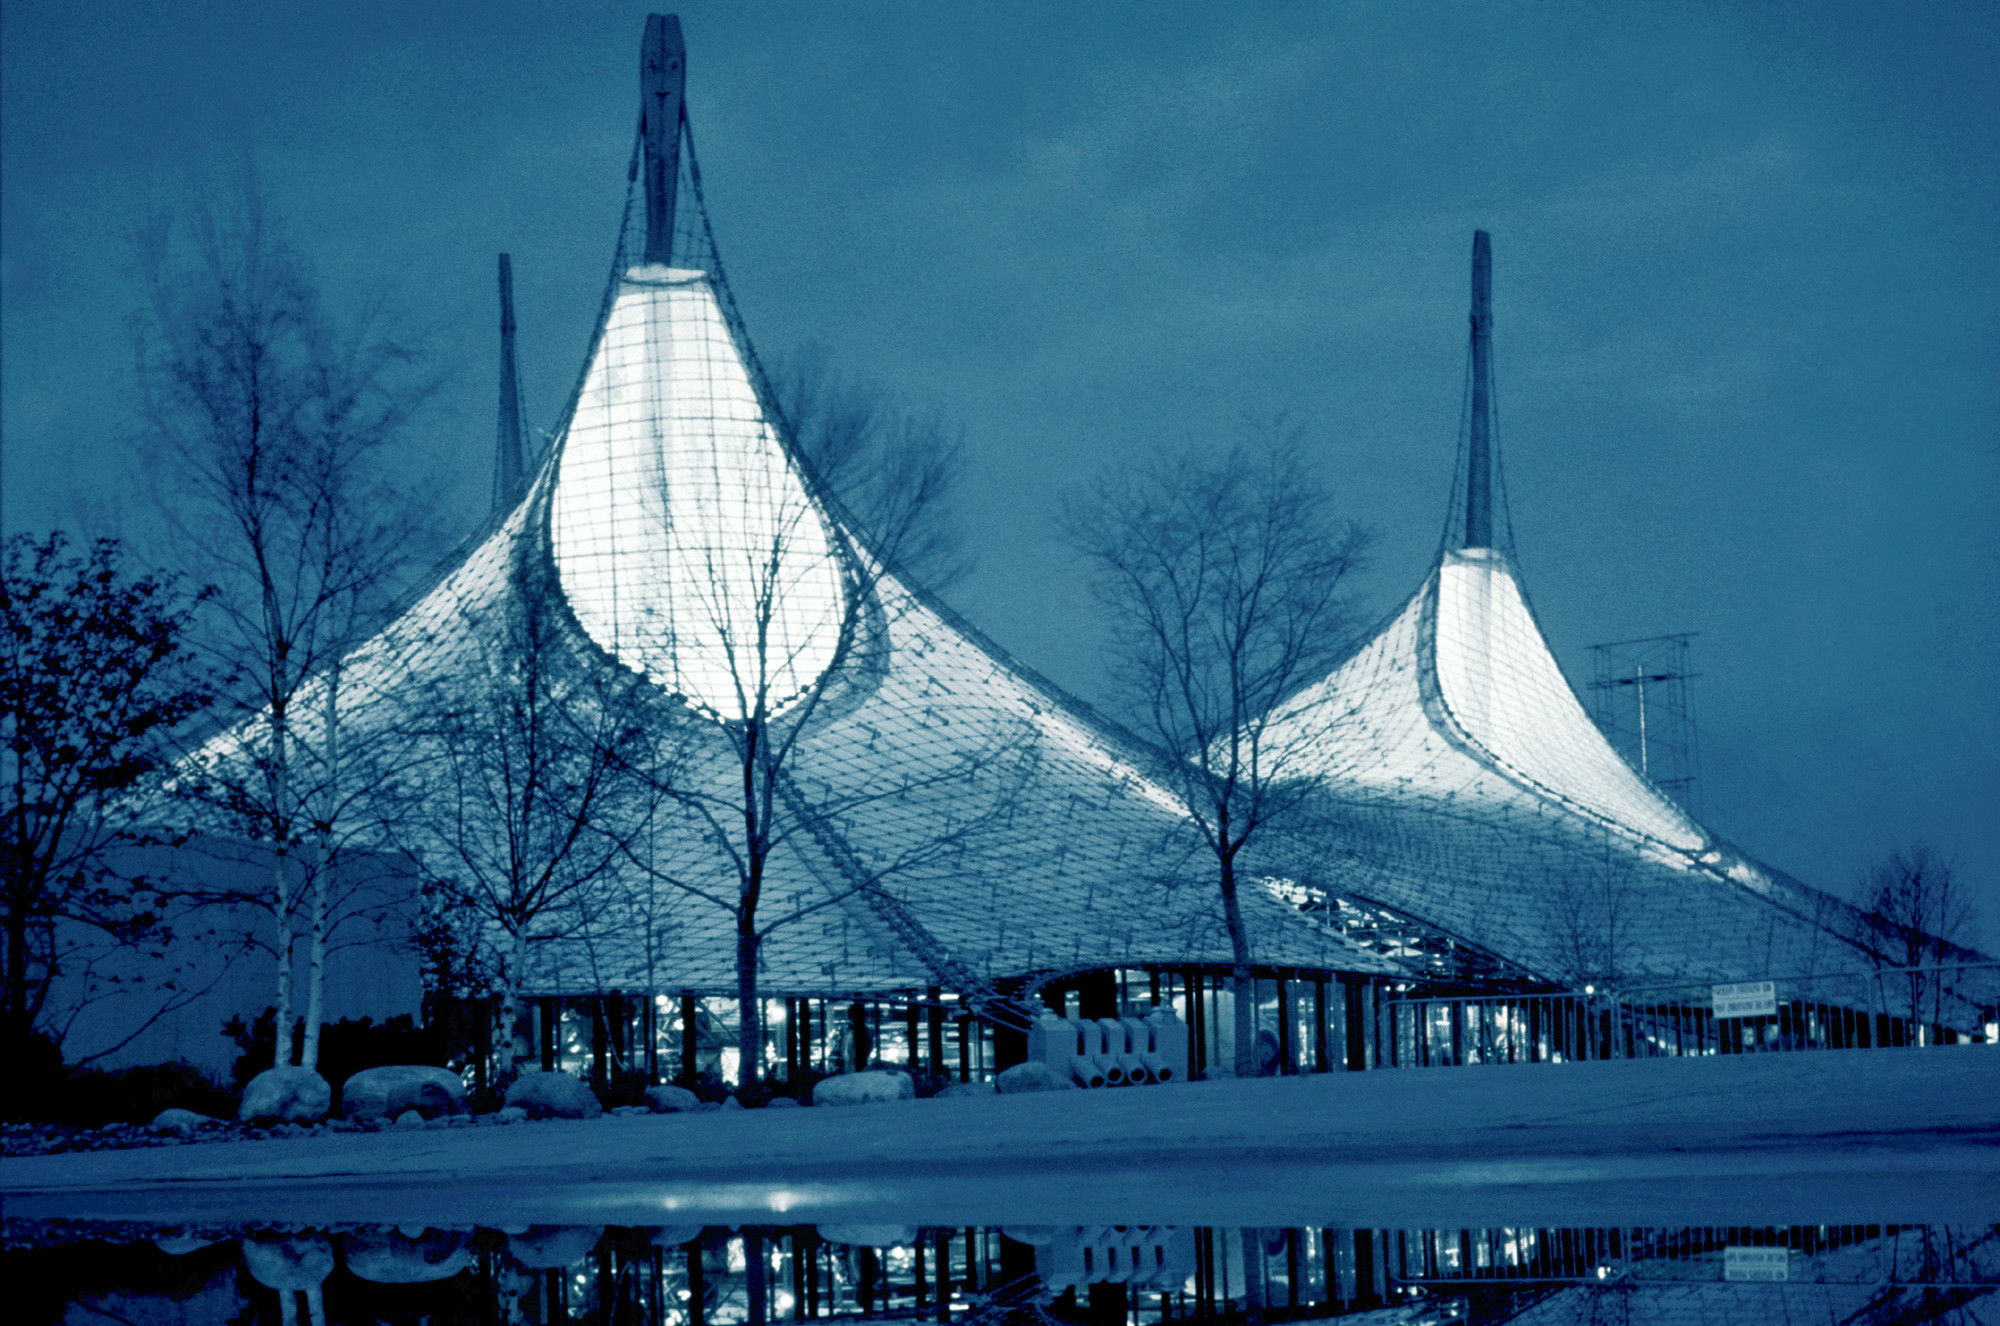 Безоговорочное международное признание пришло к архитектору за его павильон, представленный на Всемирной выставке 1967 года в Монреале. В 2017-м этой работе исполняется 50 лет
